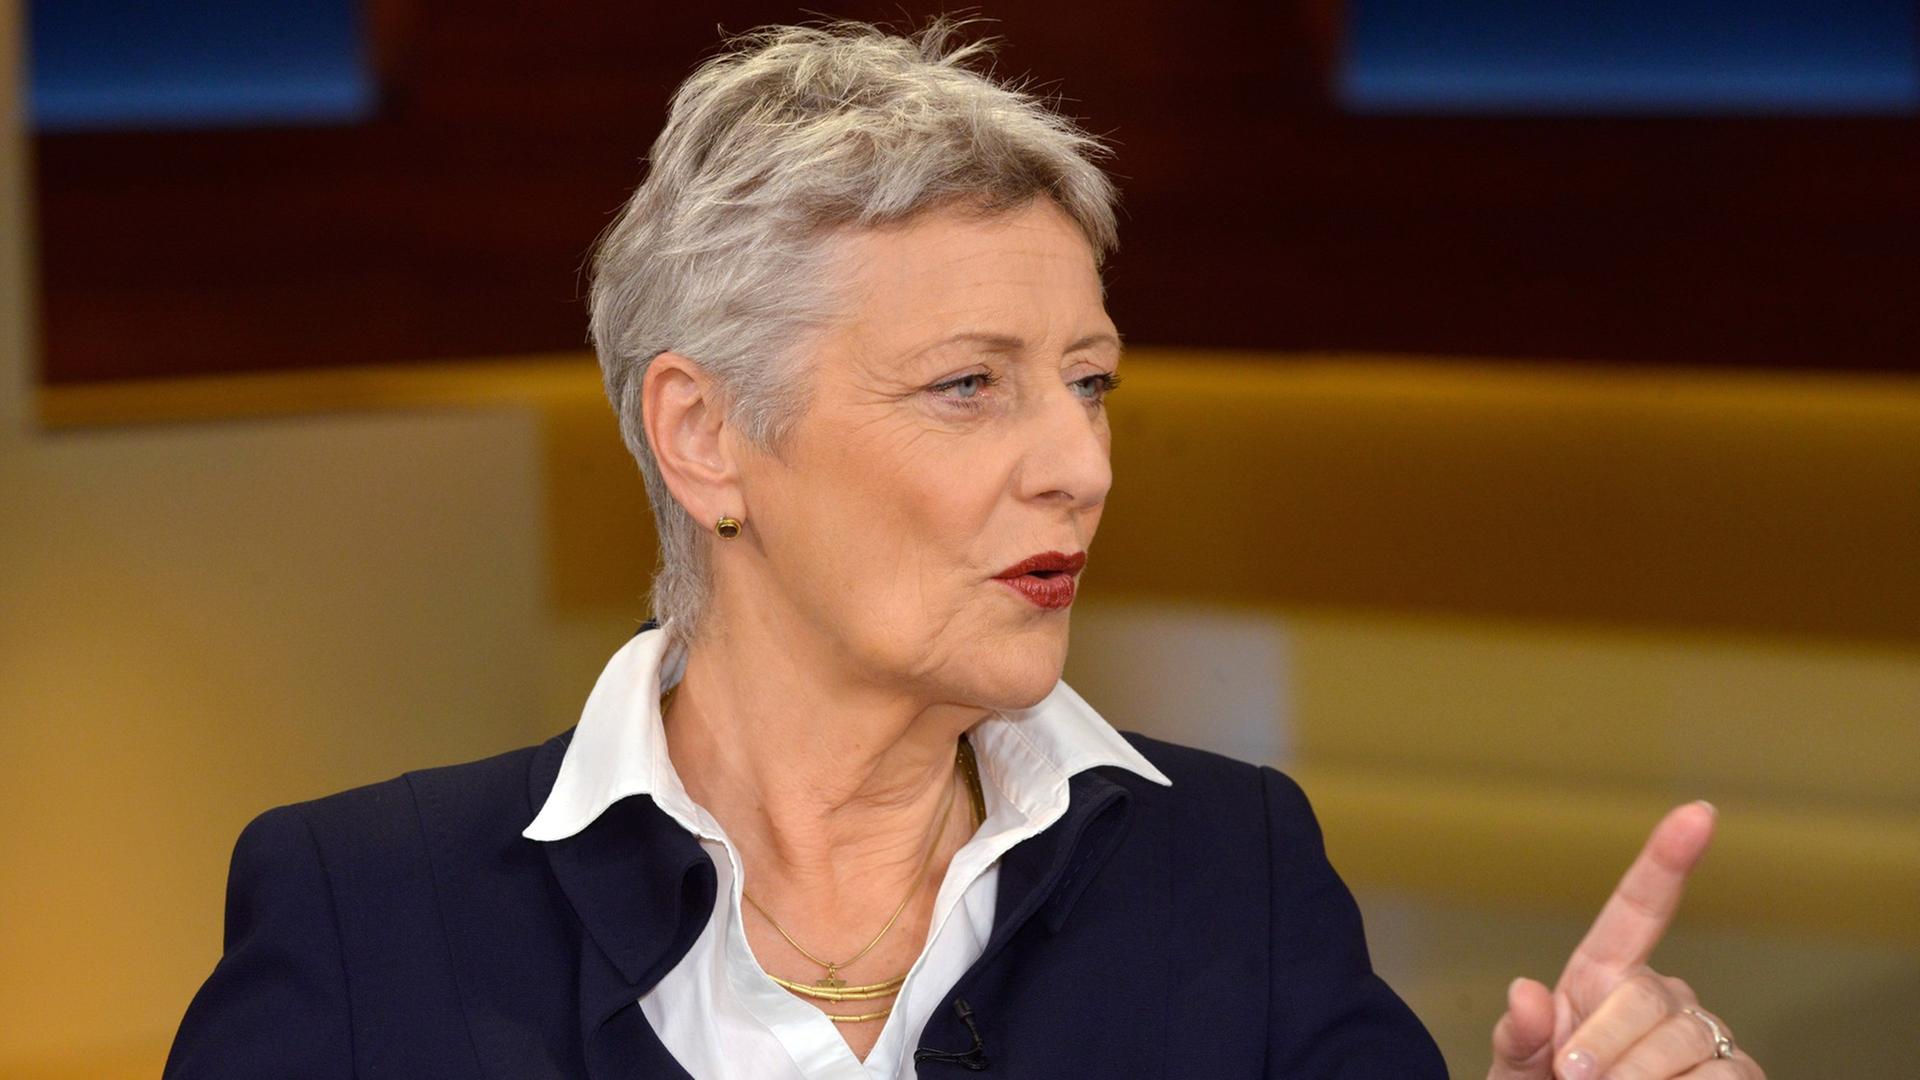 Die Grünen-Politikerin Marieluise Beck in der ARD-Talksendung "Anne Will".